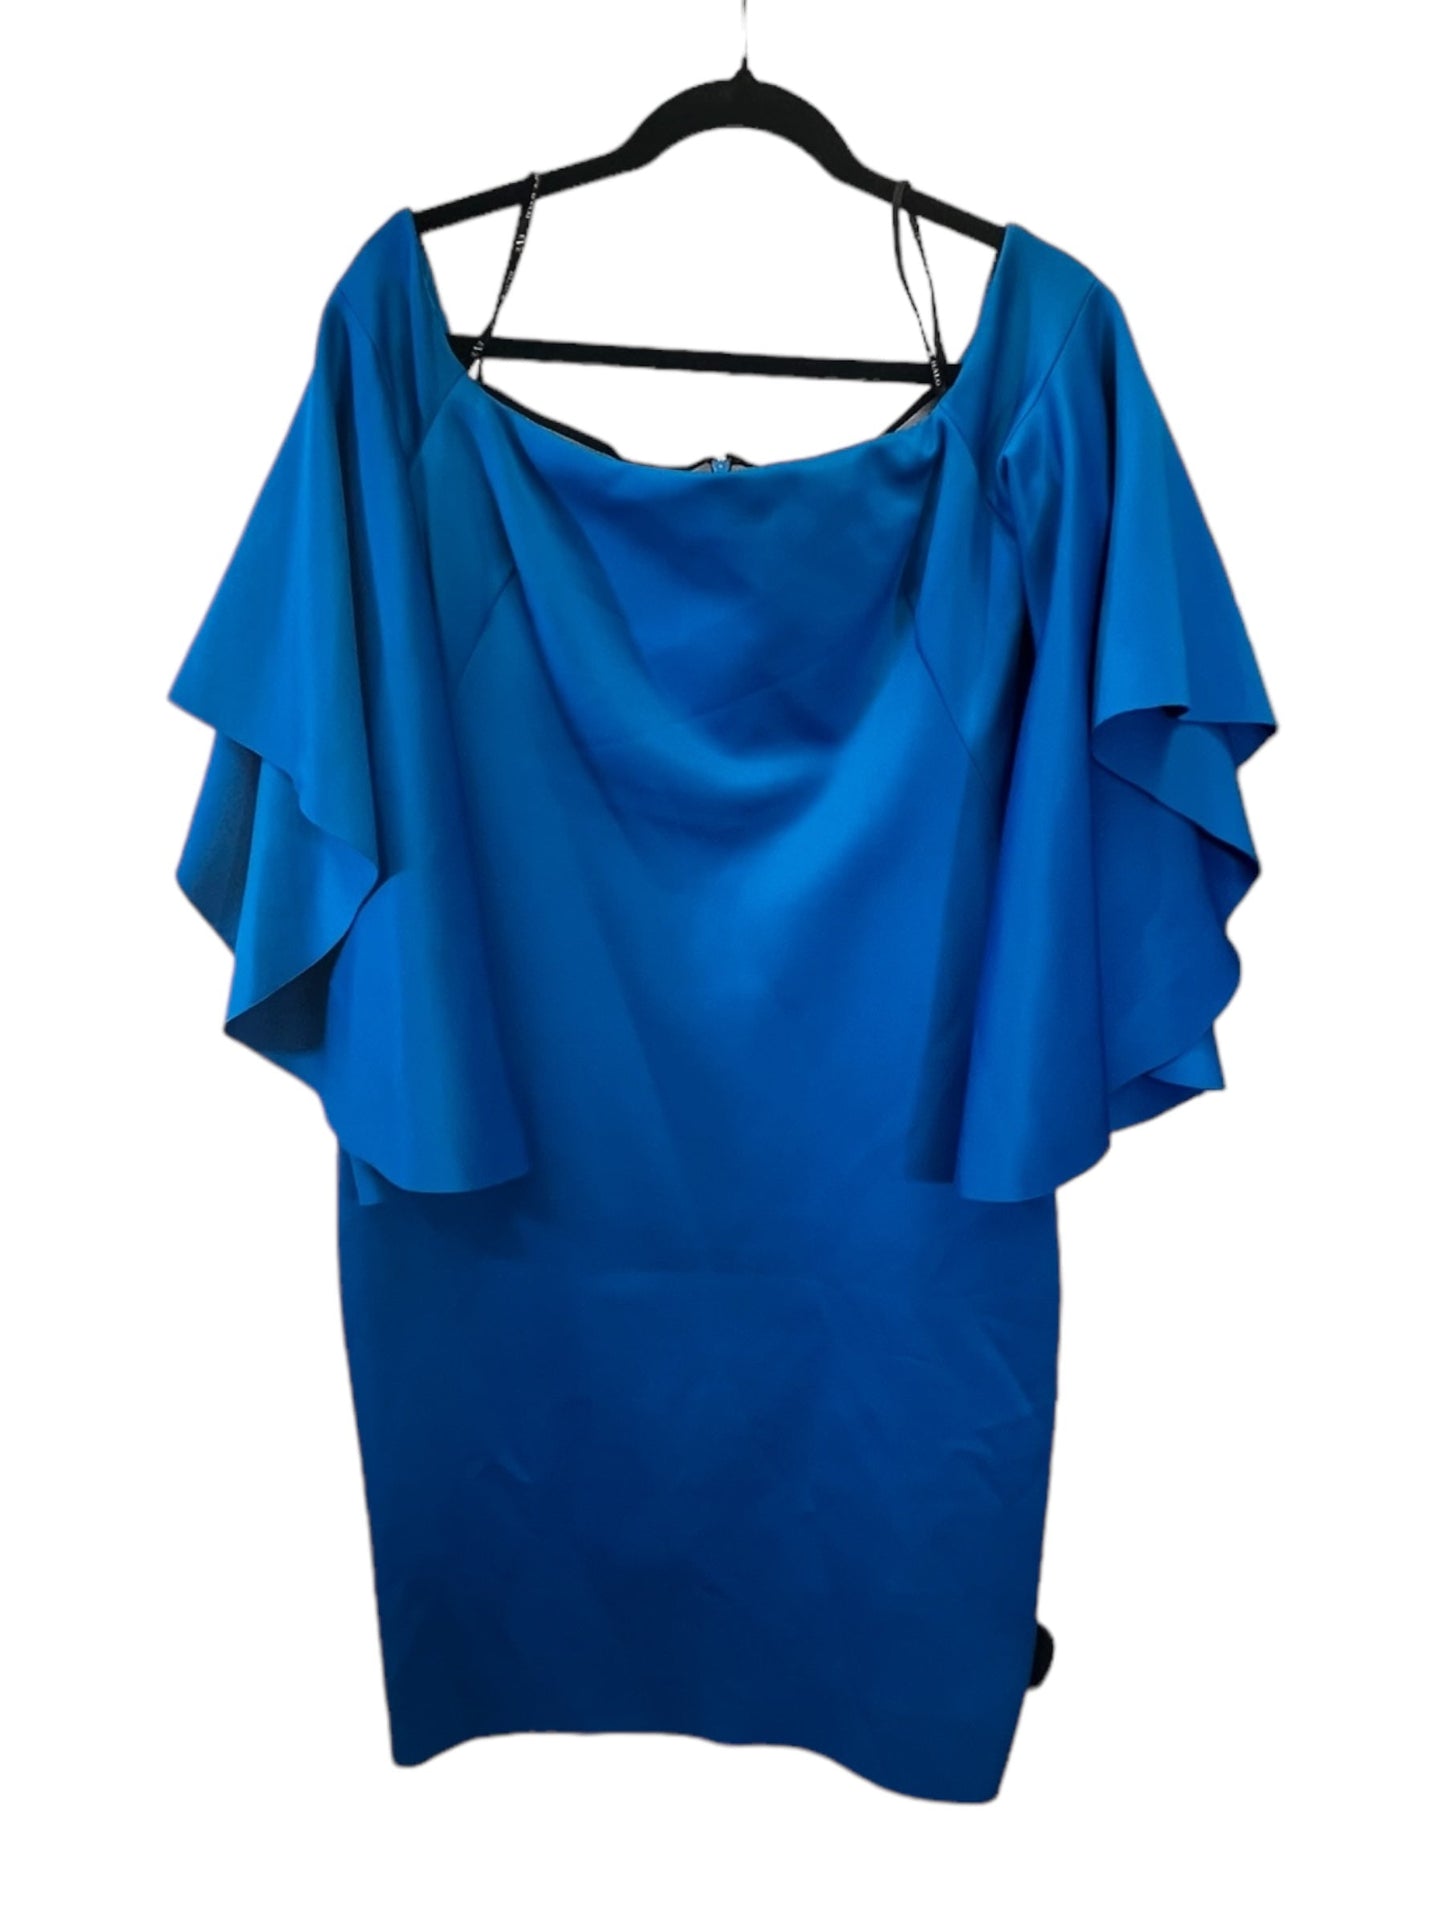 Blue Dress Designer Black Halo, Size 12